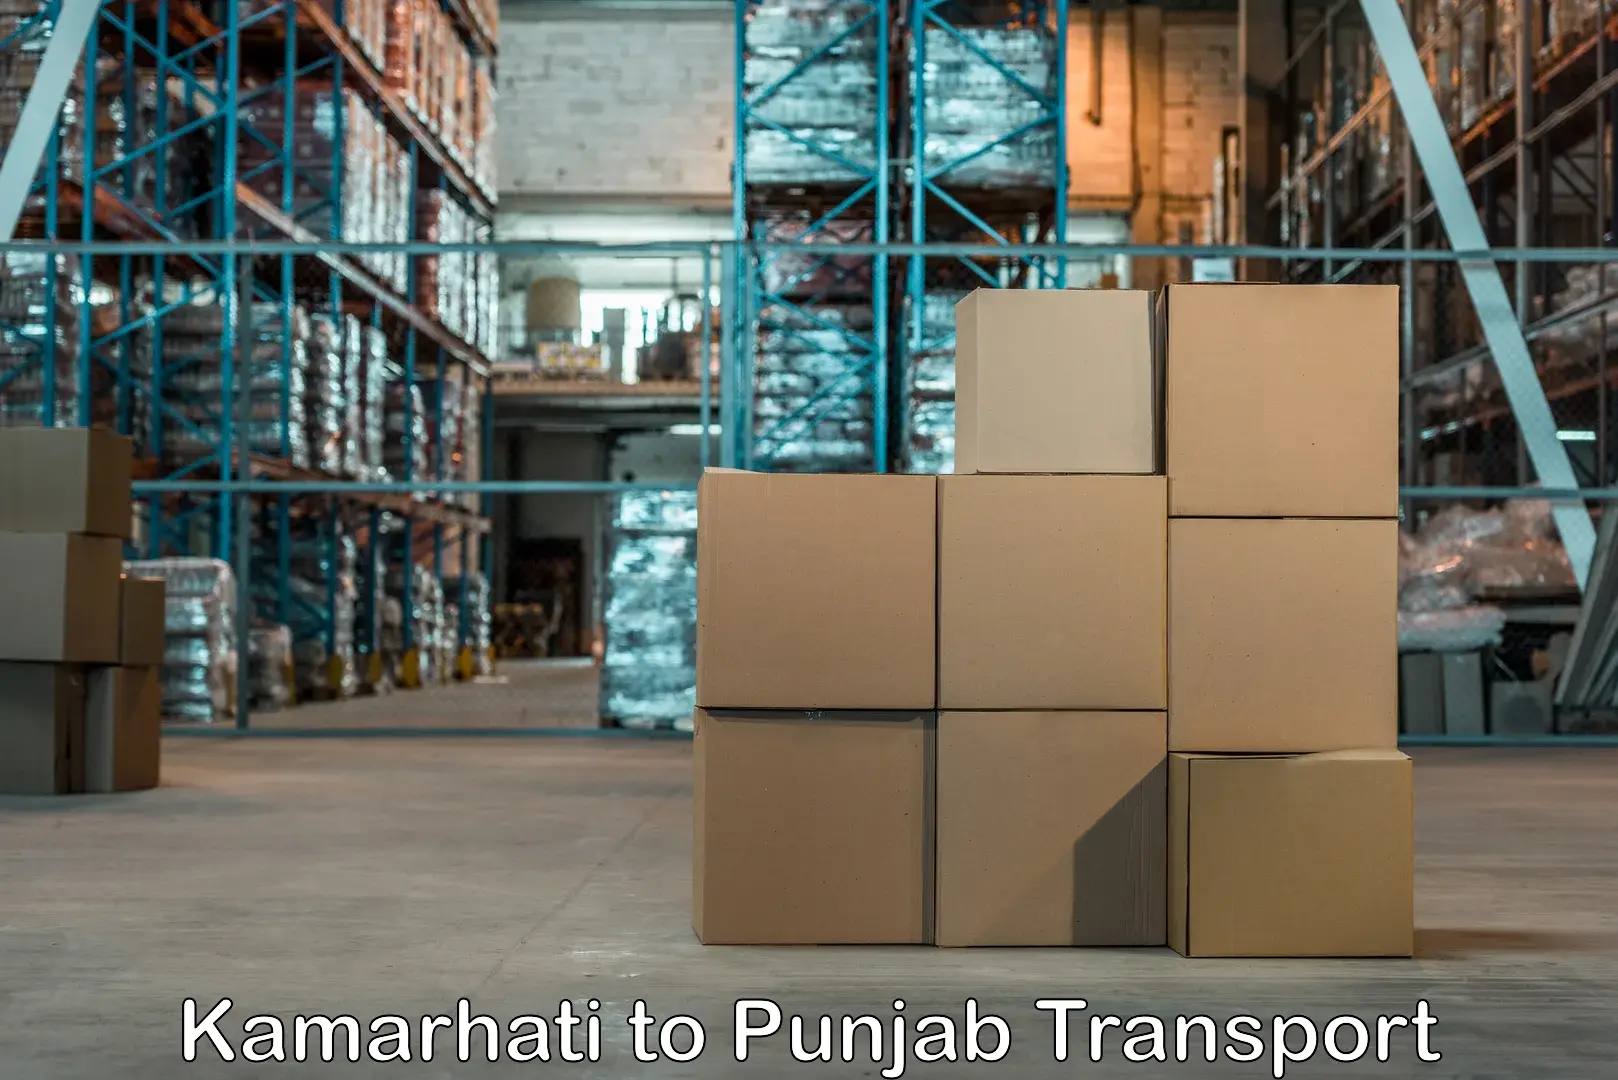 Road transport services Kamarhati to Punjab